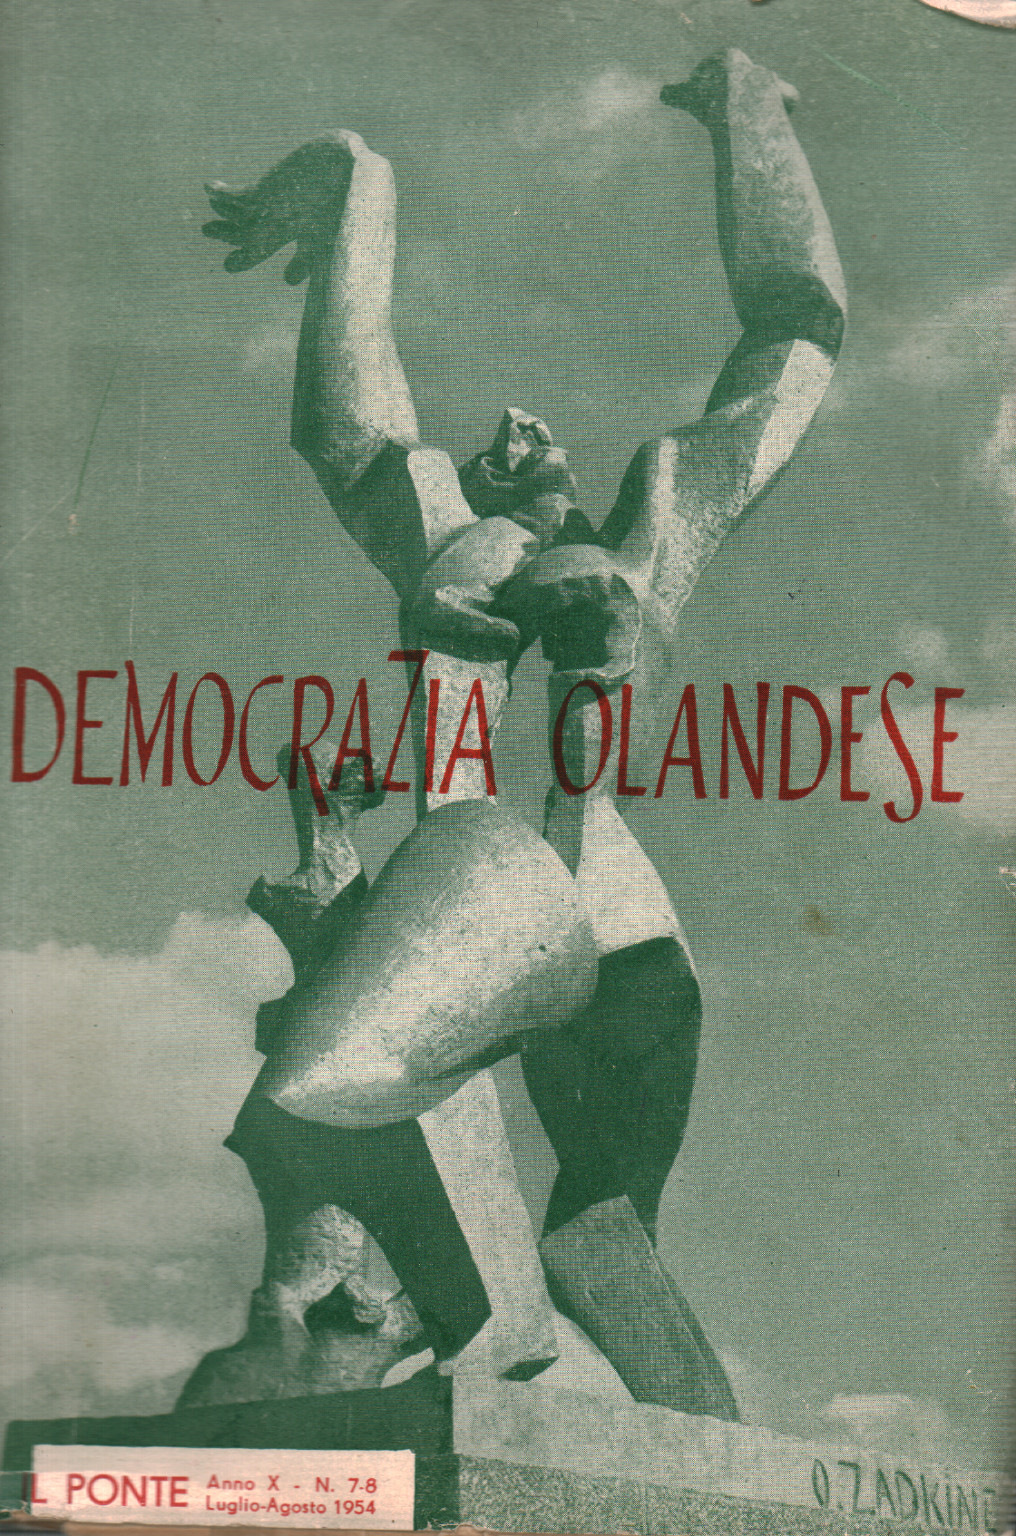 Democrazia olandese (Il Ponte, Anno X - N. 7-8, Lu, s.a.